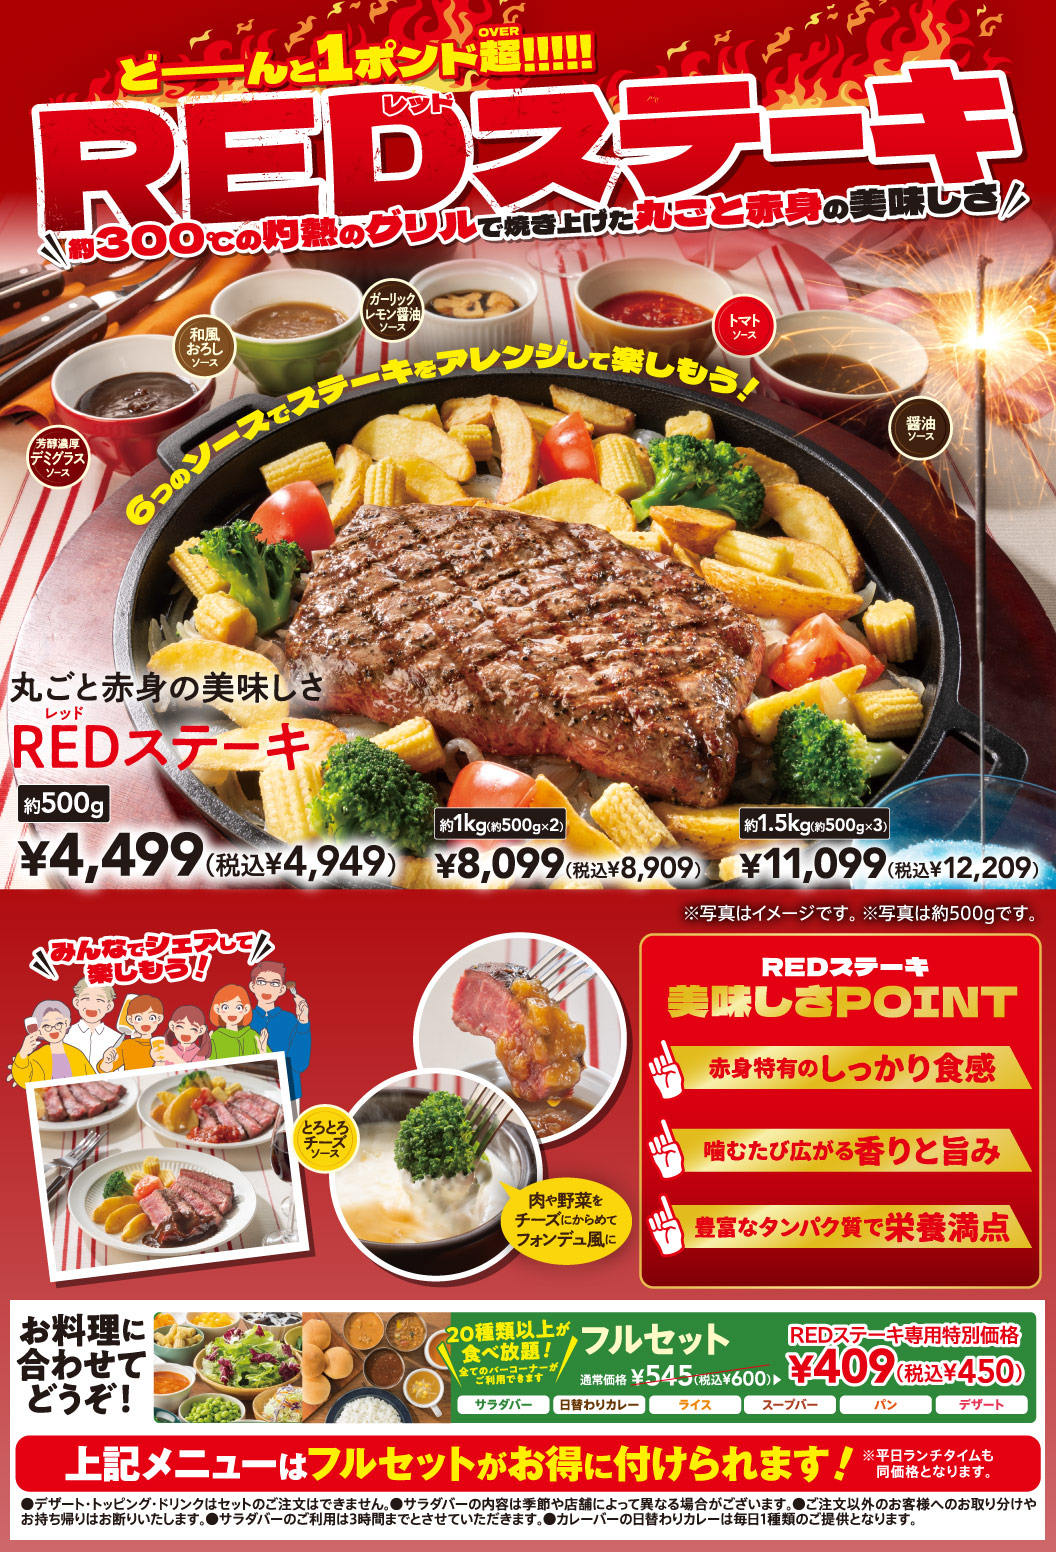 RED Steak